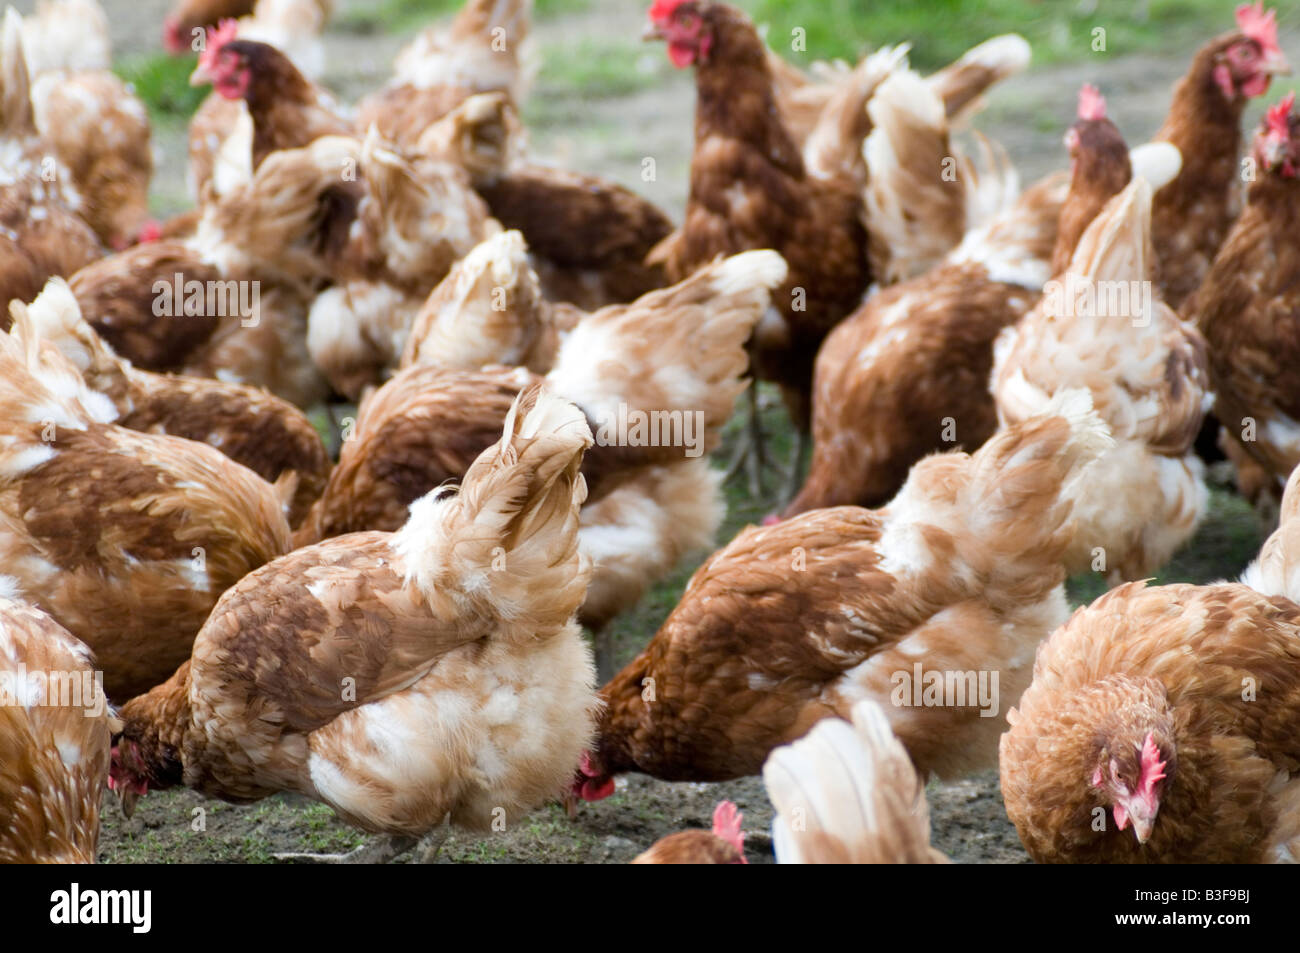 Freerange pollos pollo gallina de los huevos de gallinas libres de aves gama granjero cría aves de aves de granja de producción alimentaria derramó peck picoteando scr Foto de stock